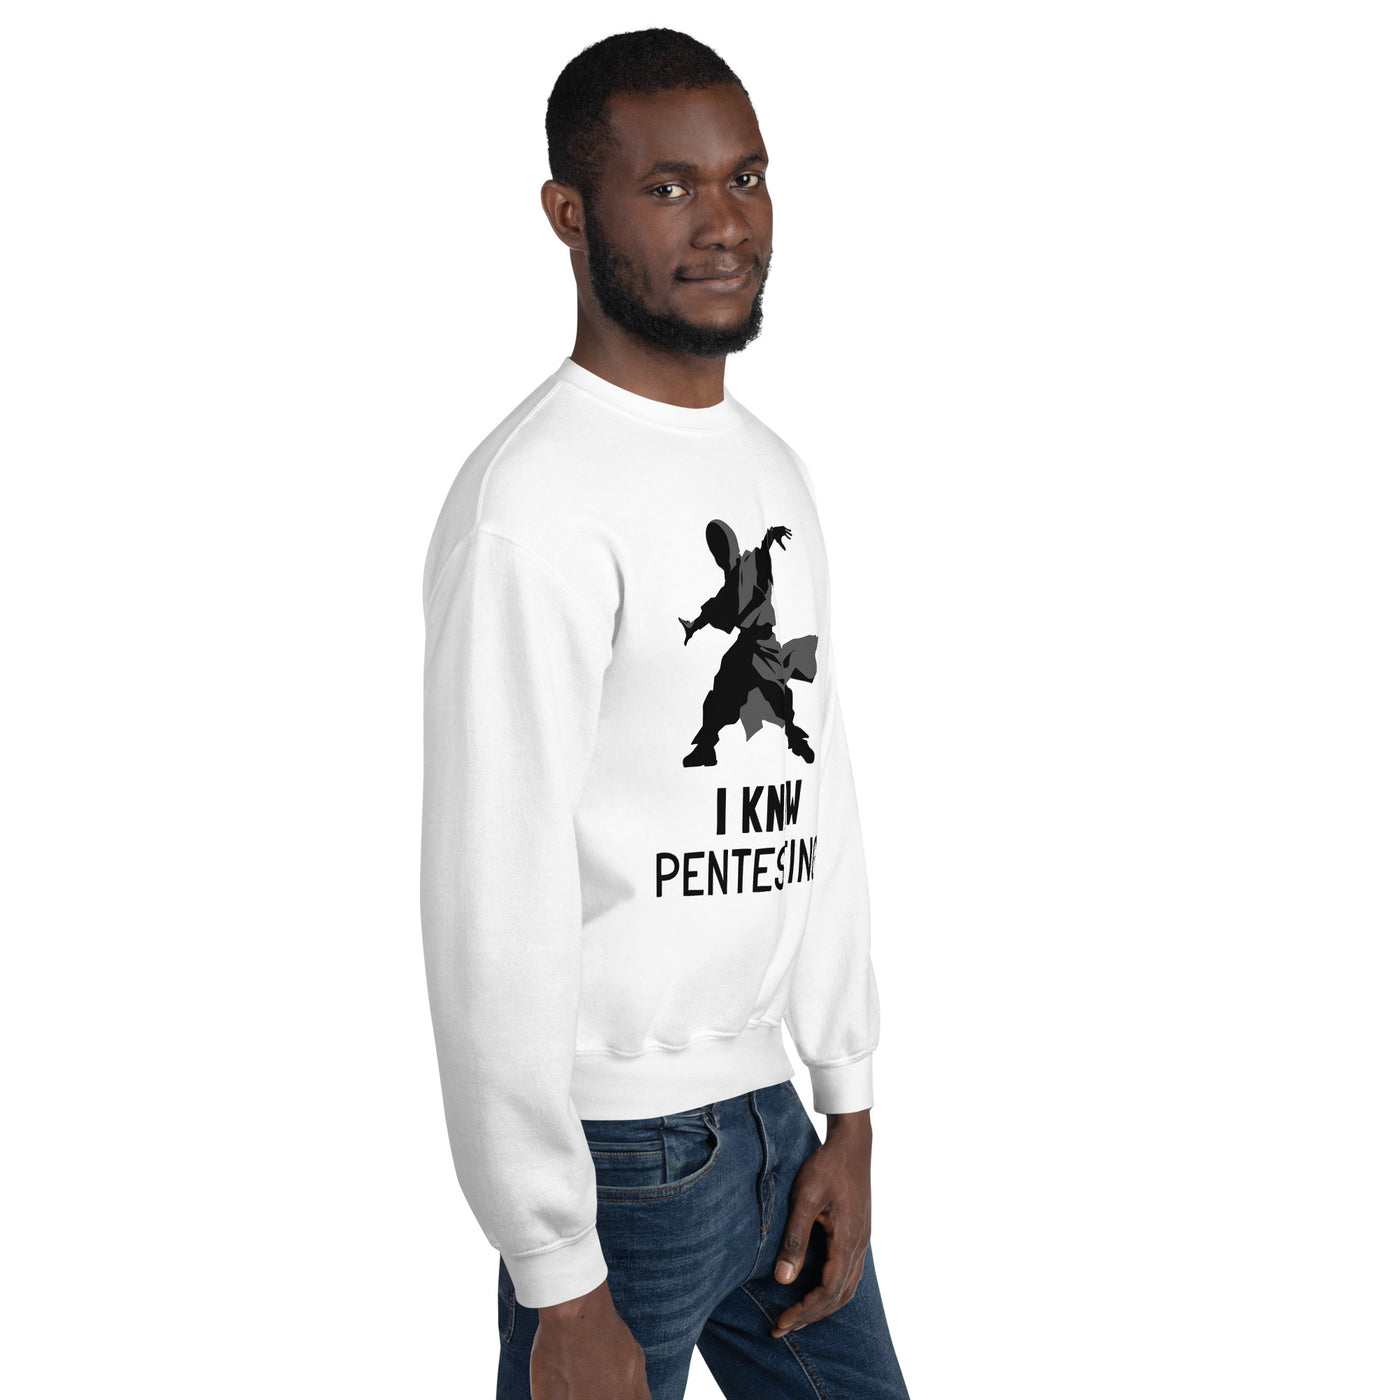 I Know Pentesting -Unisex Sweatshirt